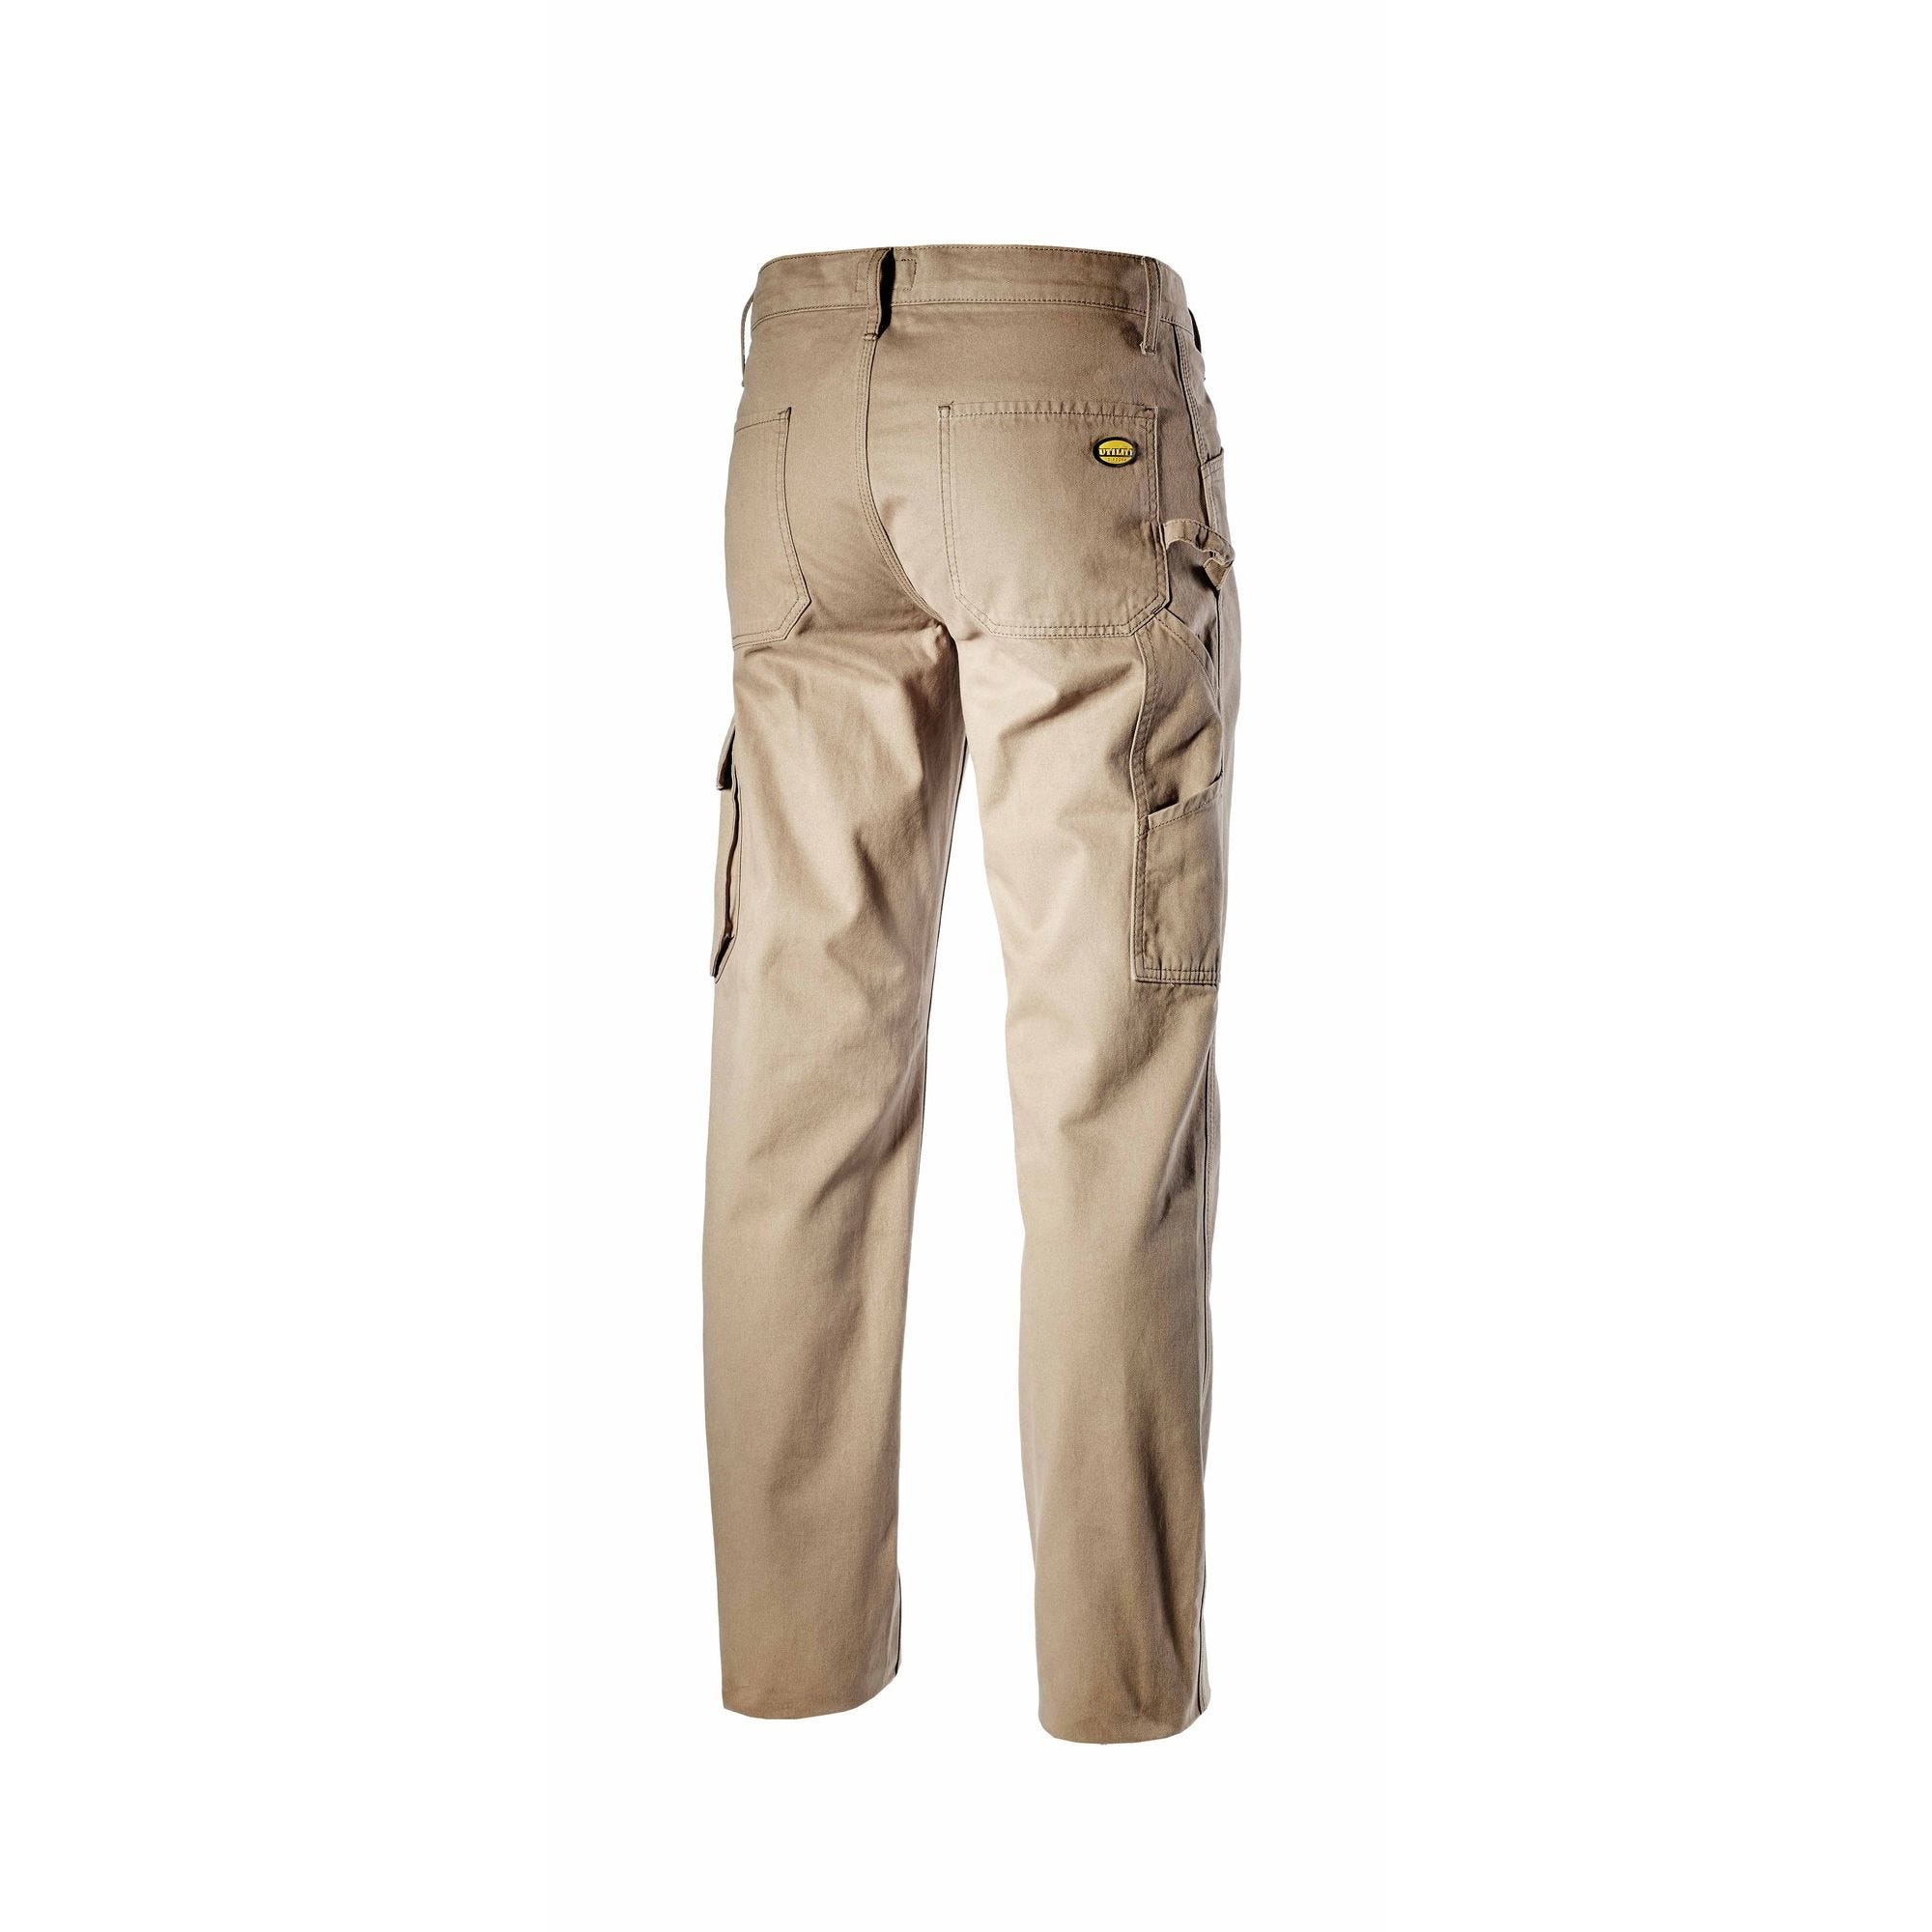 Pantalon de travail TRADE ISO beige T3XL - DIADORA SPA - 702.159630.3XL 25070 1